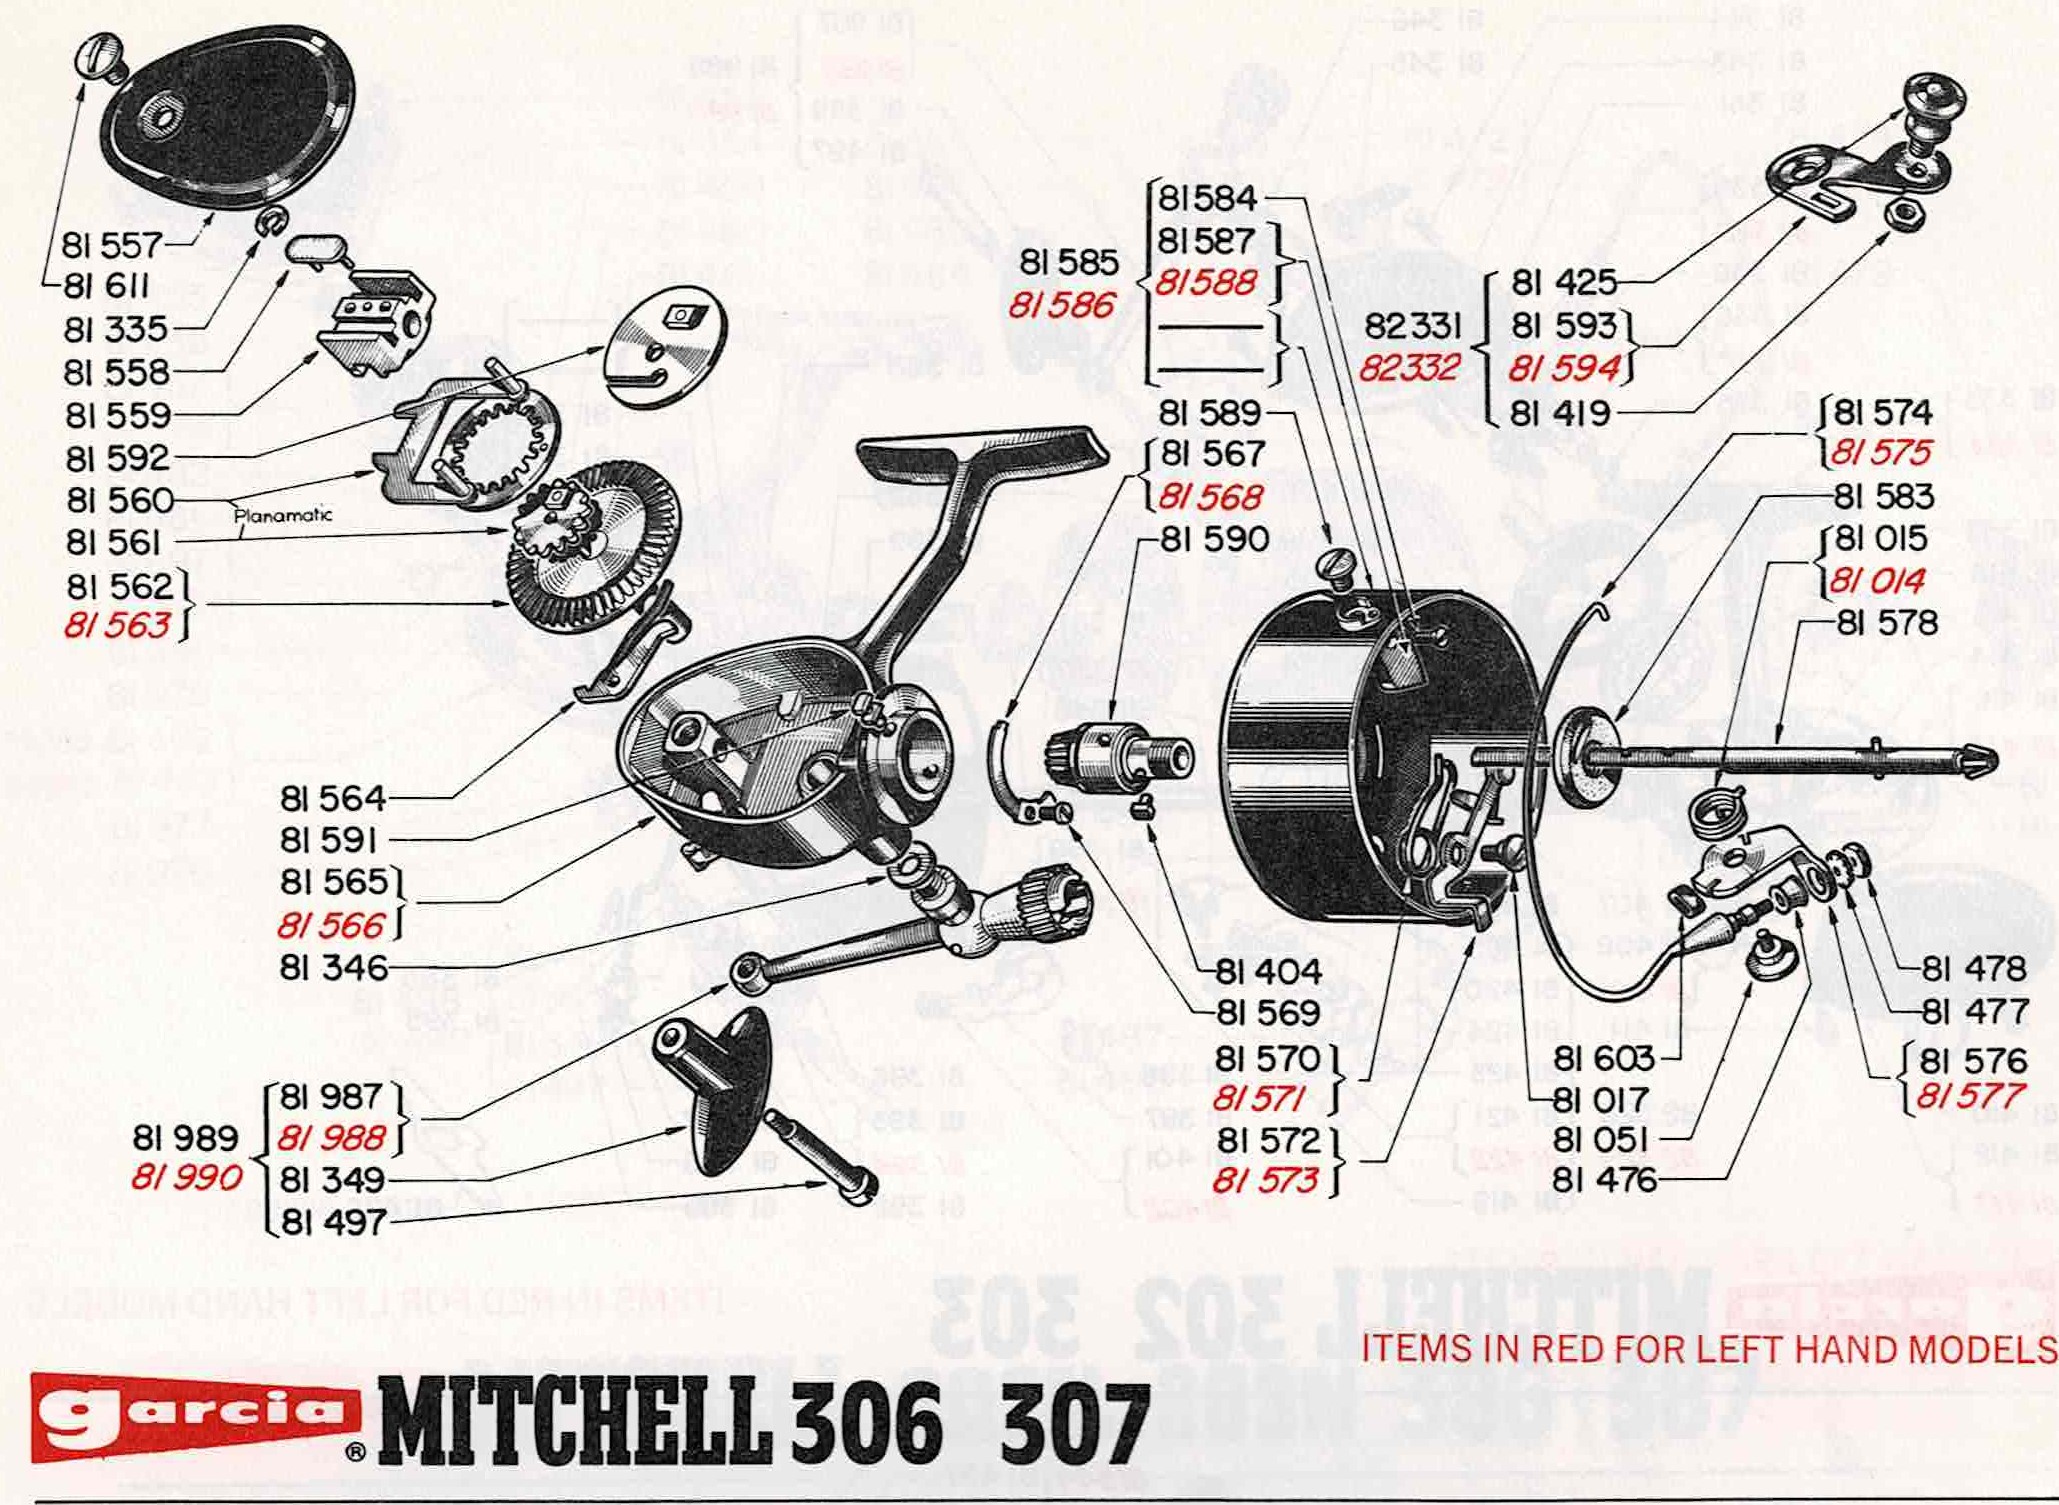 Mitchell 307 Schematic-my book.jpg